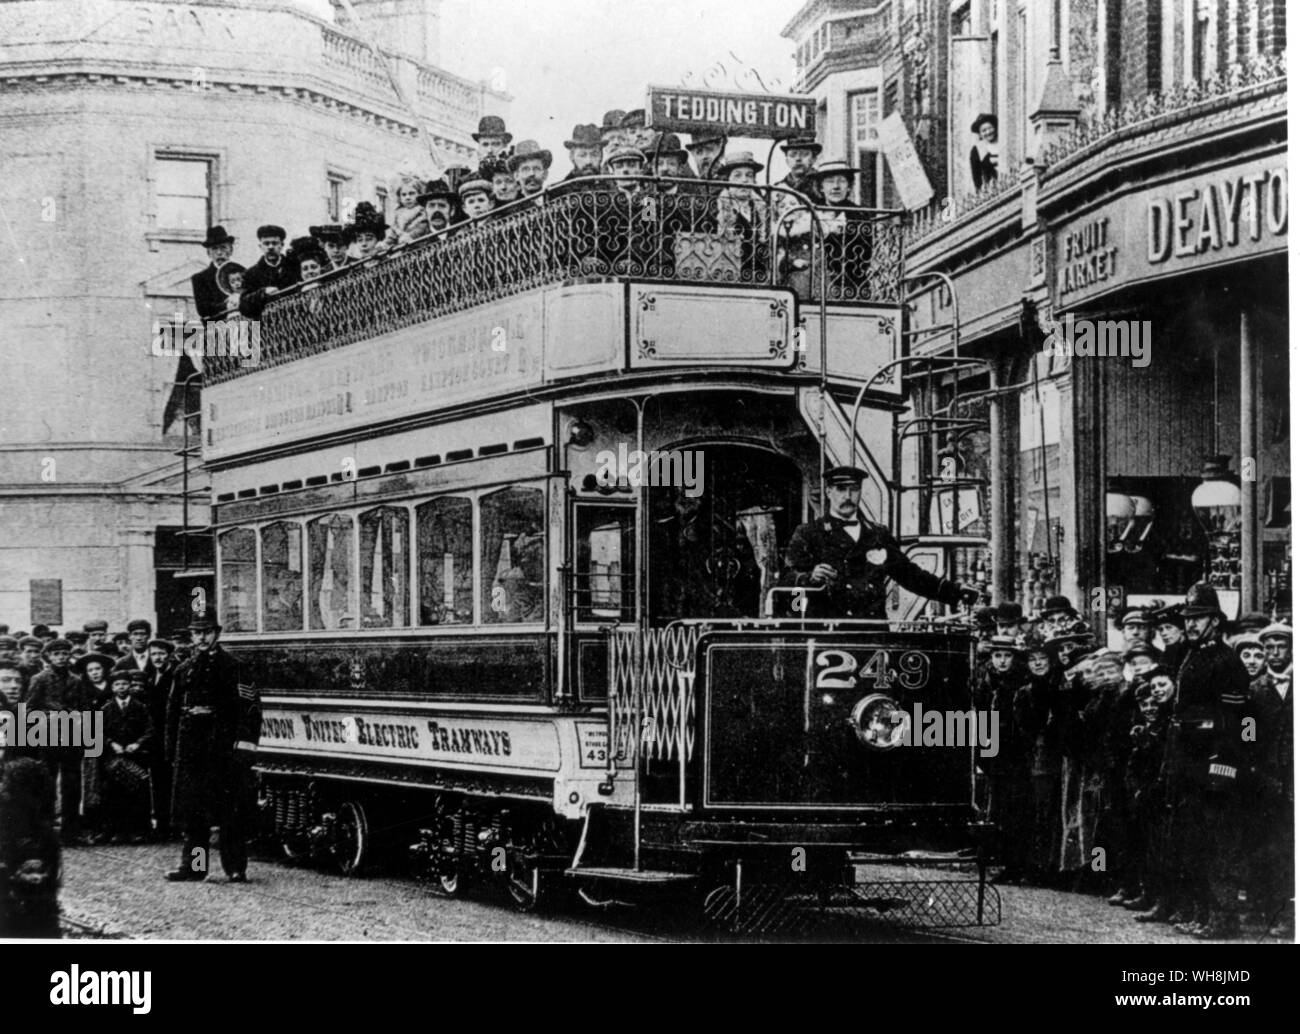 Teddington Middlesex Tramways 1903 Stock Photo